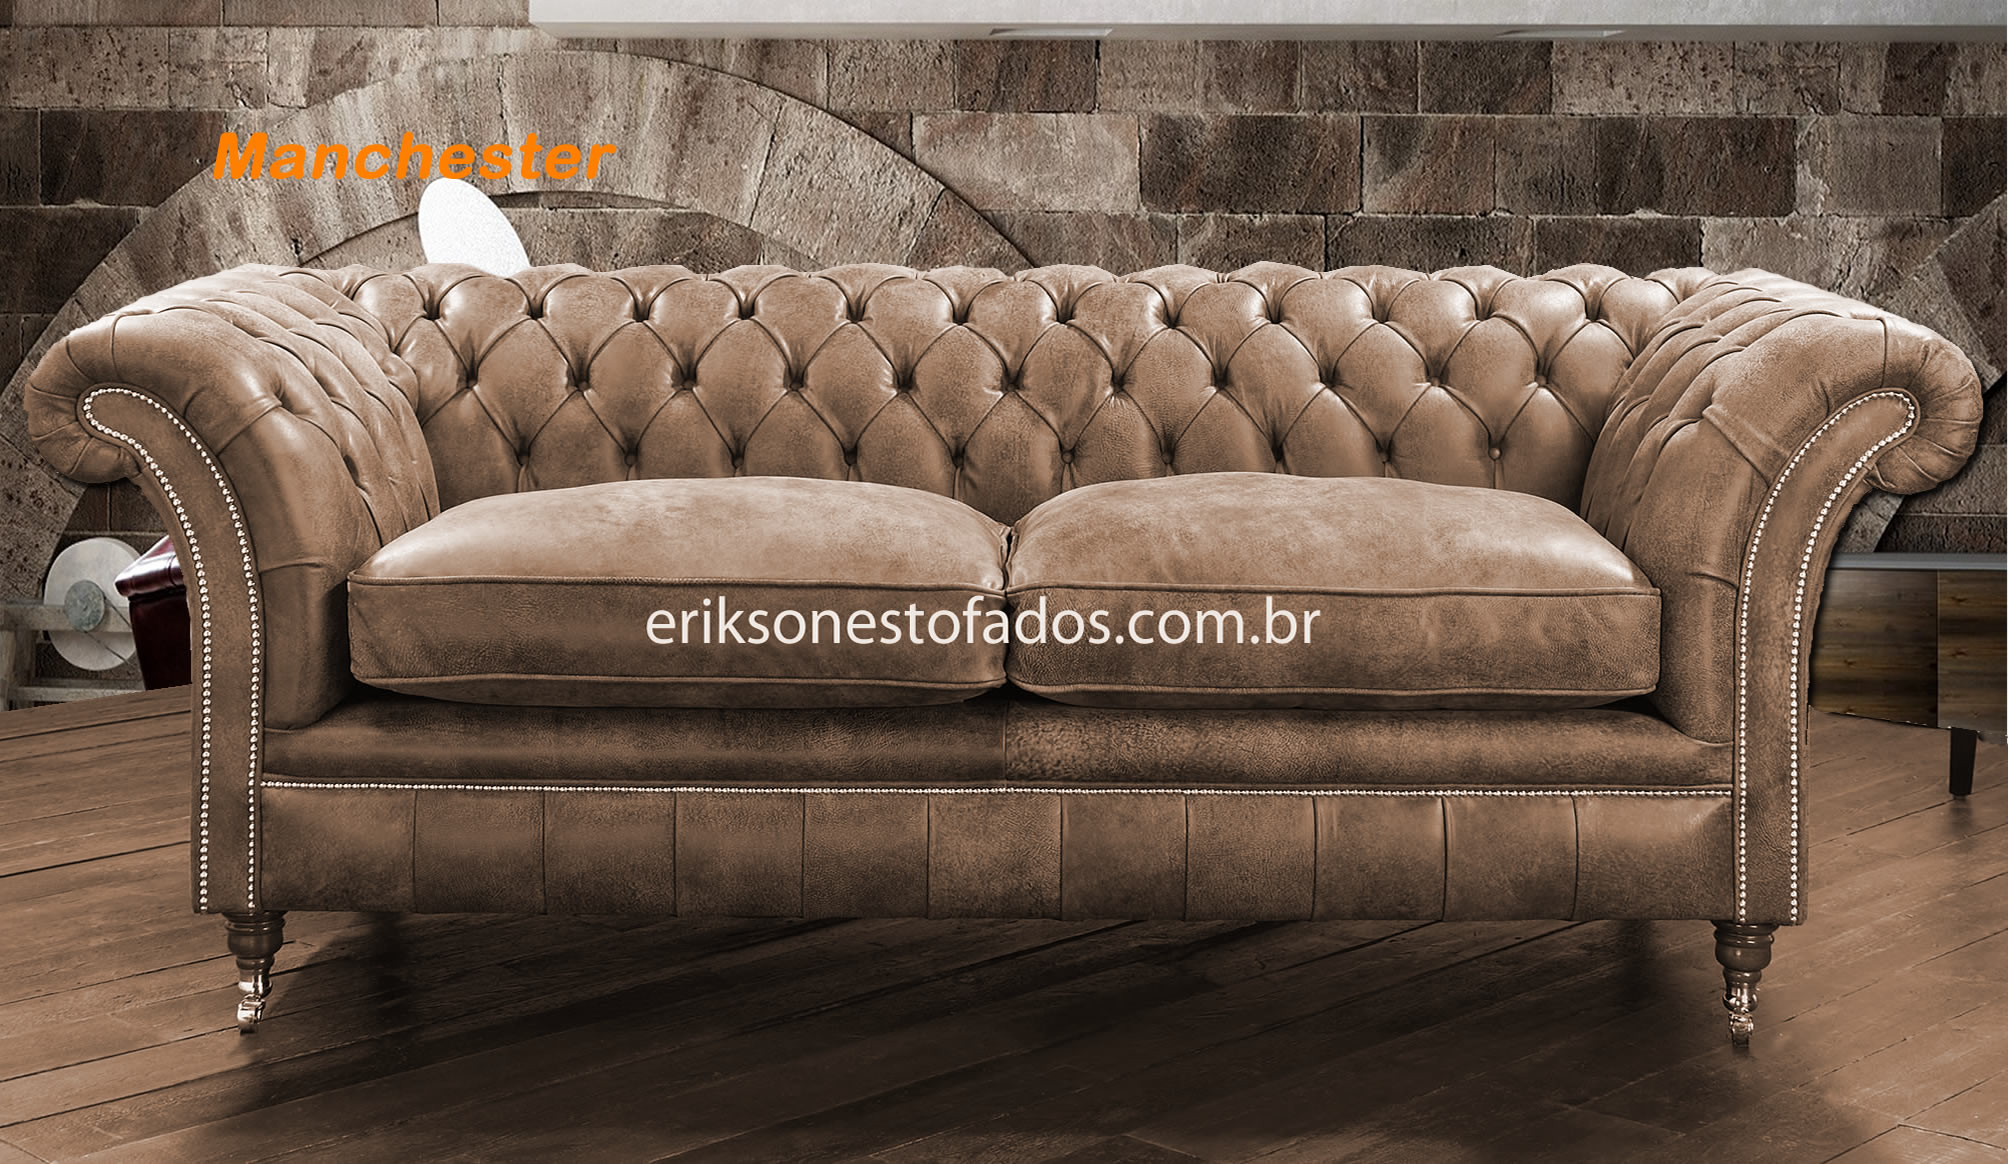 Sofá Chesterfield - Conheça o segredo do sofá mais famoso do mundo, fábrica  no Brasil | eriksonestofados.com.br